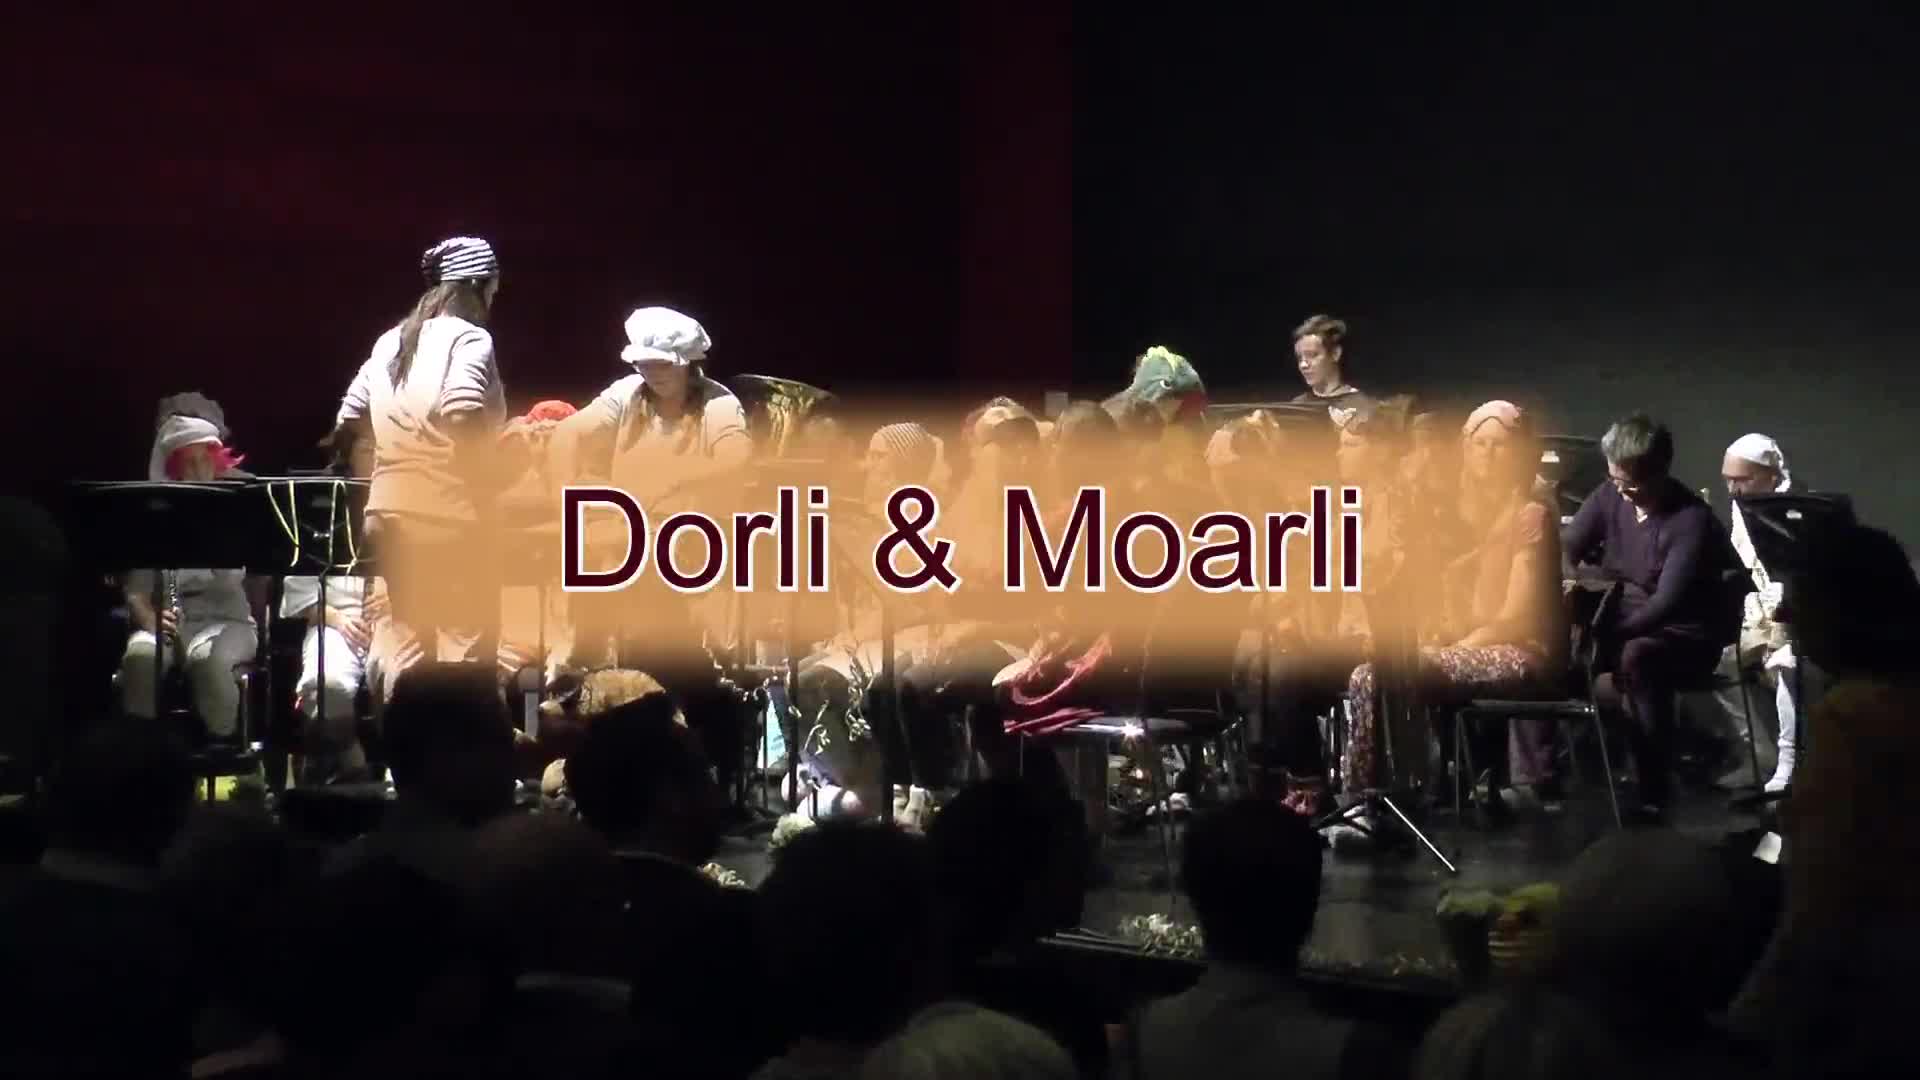 Dorli & Moarli - Faschingsgaudi im Schöffl